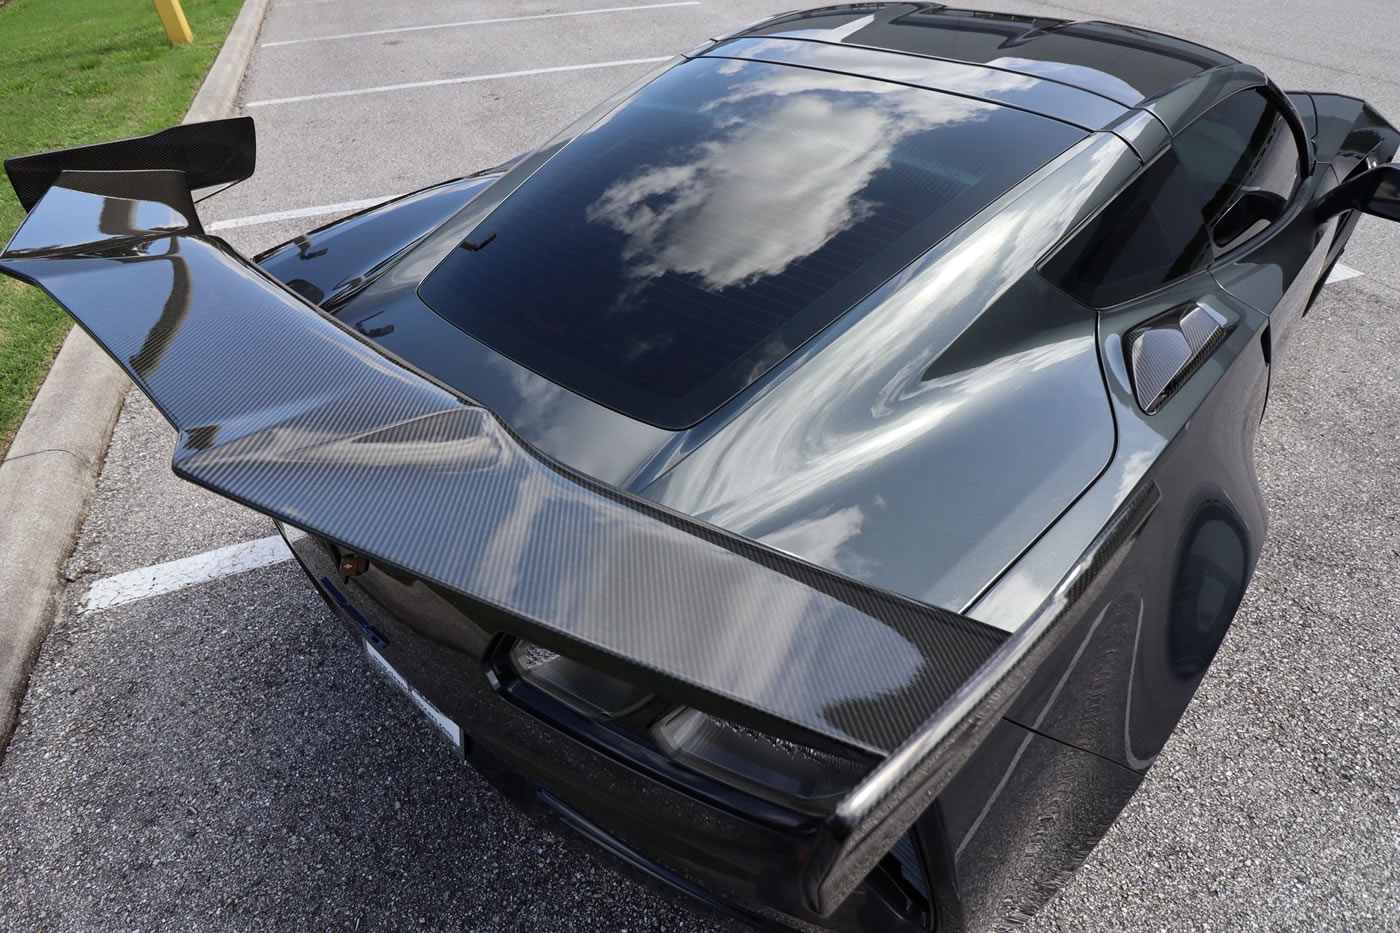 2019 Corvette ZR1 Coupe in Watkins Glen Gray Metallic